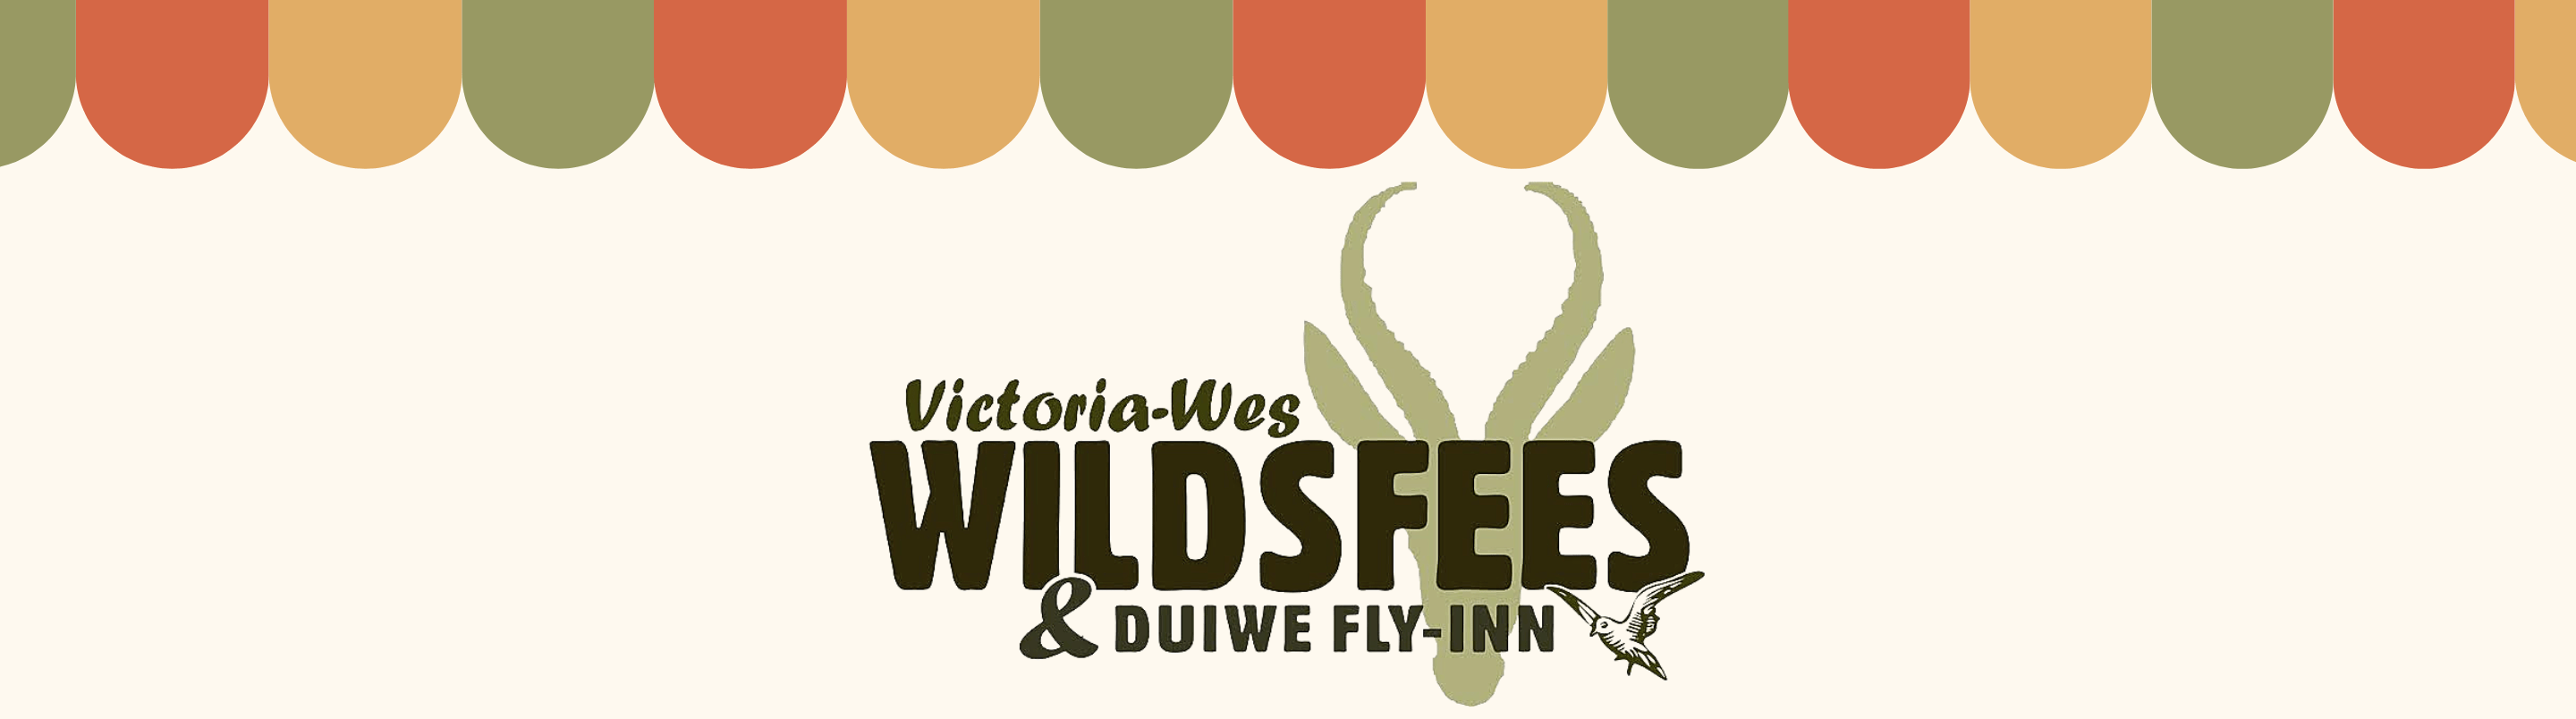 Wildsfees Web Banner